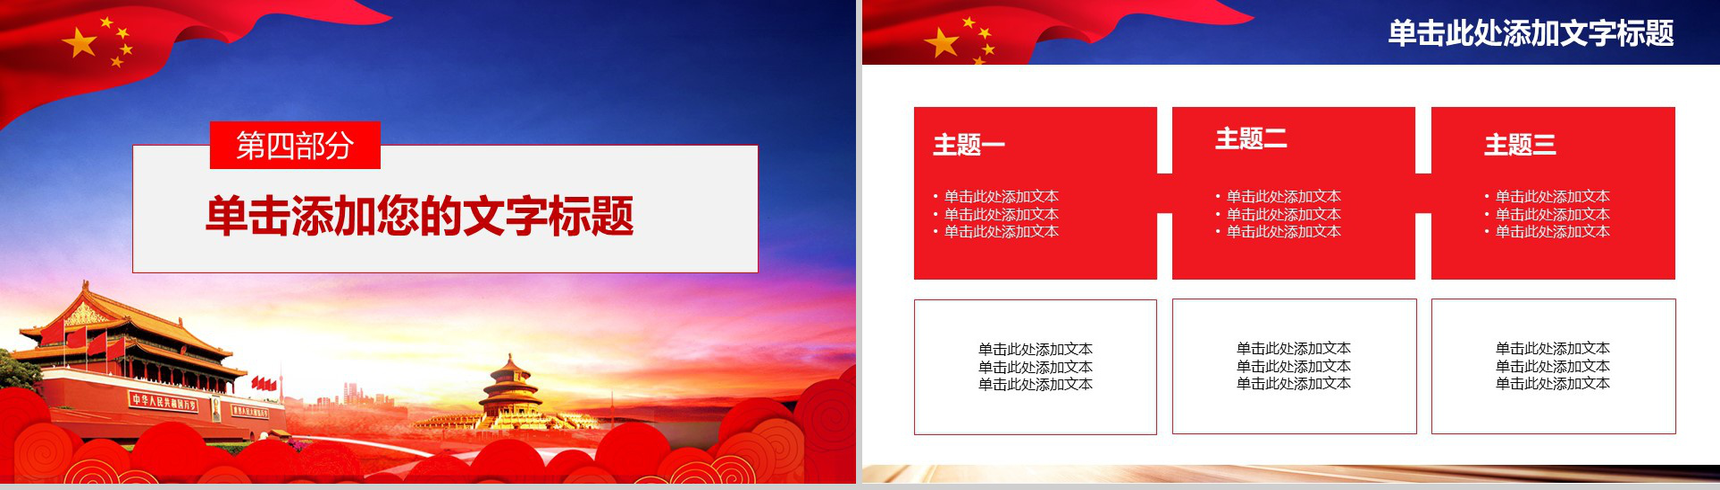 简约中国梦我的梦国庆节党建活动策划PPT模板-12